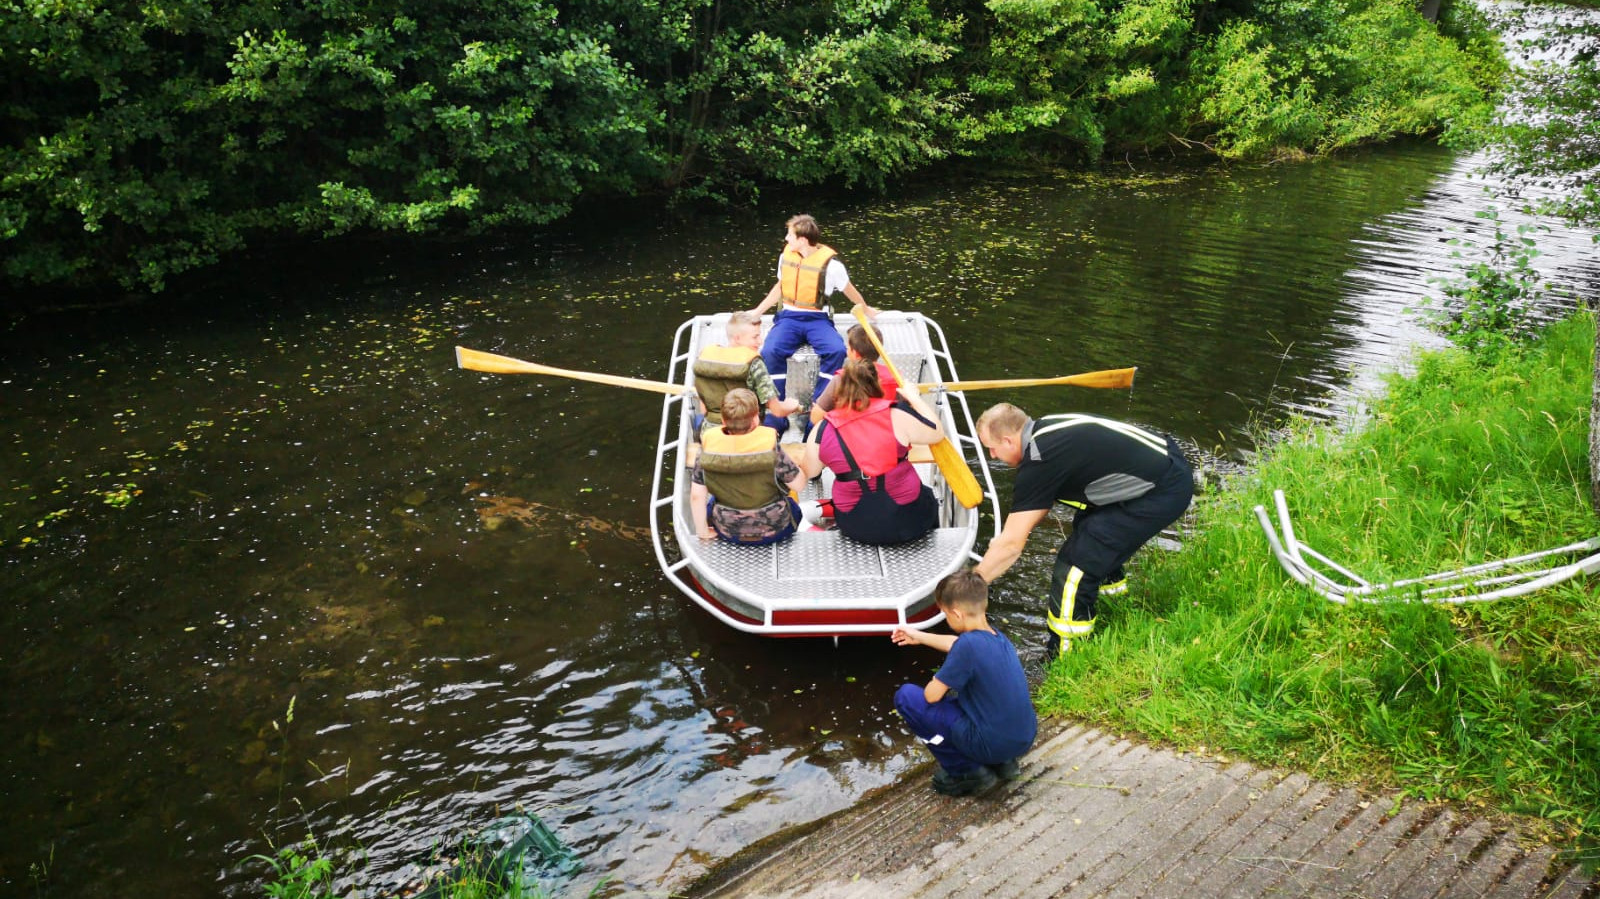 Übung Jugendfeuerwehr Jugendliche in einem Paddelboot auf einem Fluss